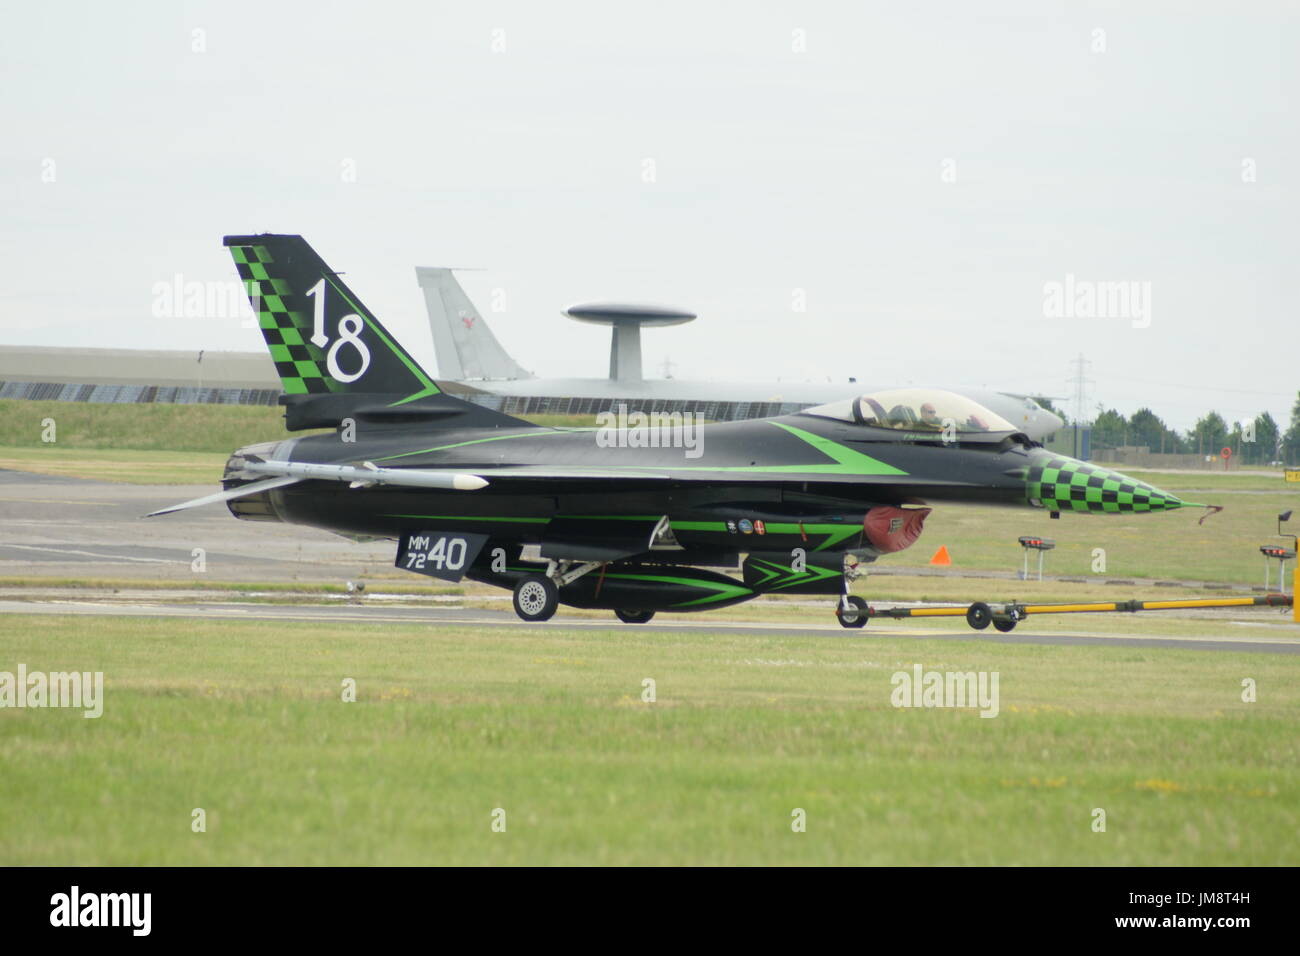 F-16 Falcon fighter jet Stock Photo